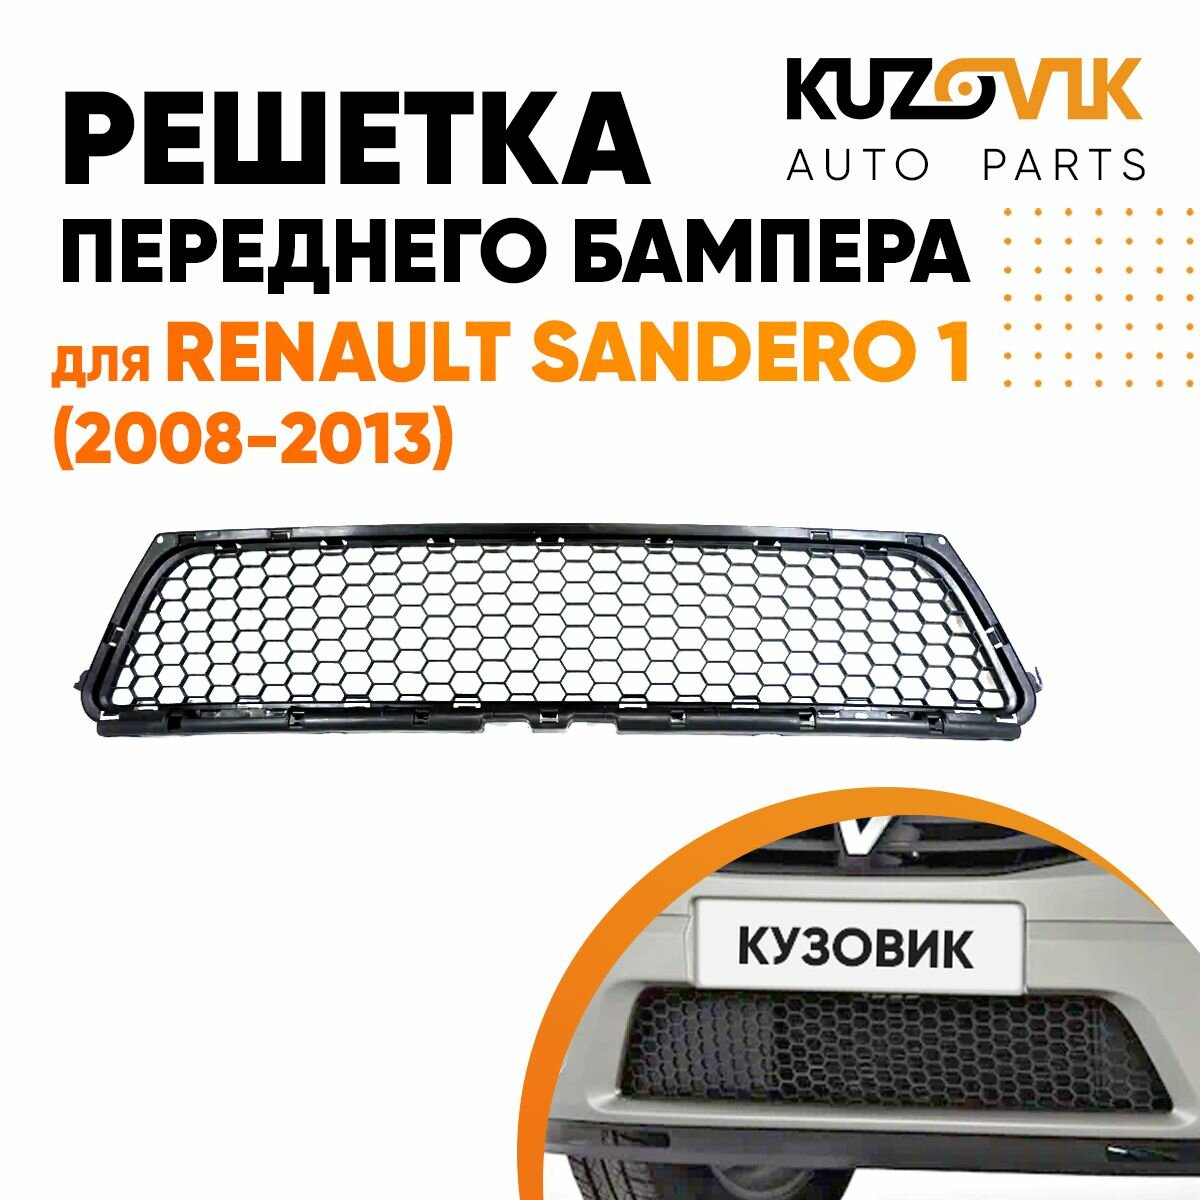 Решетка переднего бампера для Рено Сандеро Renault Sandero 1 (2008-2013) центральная нижняя